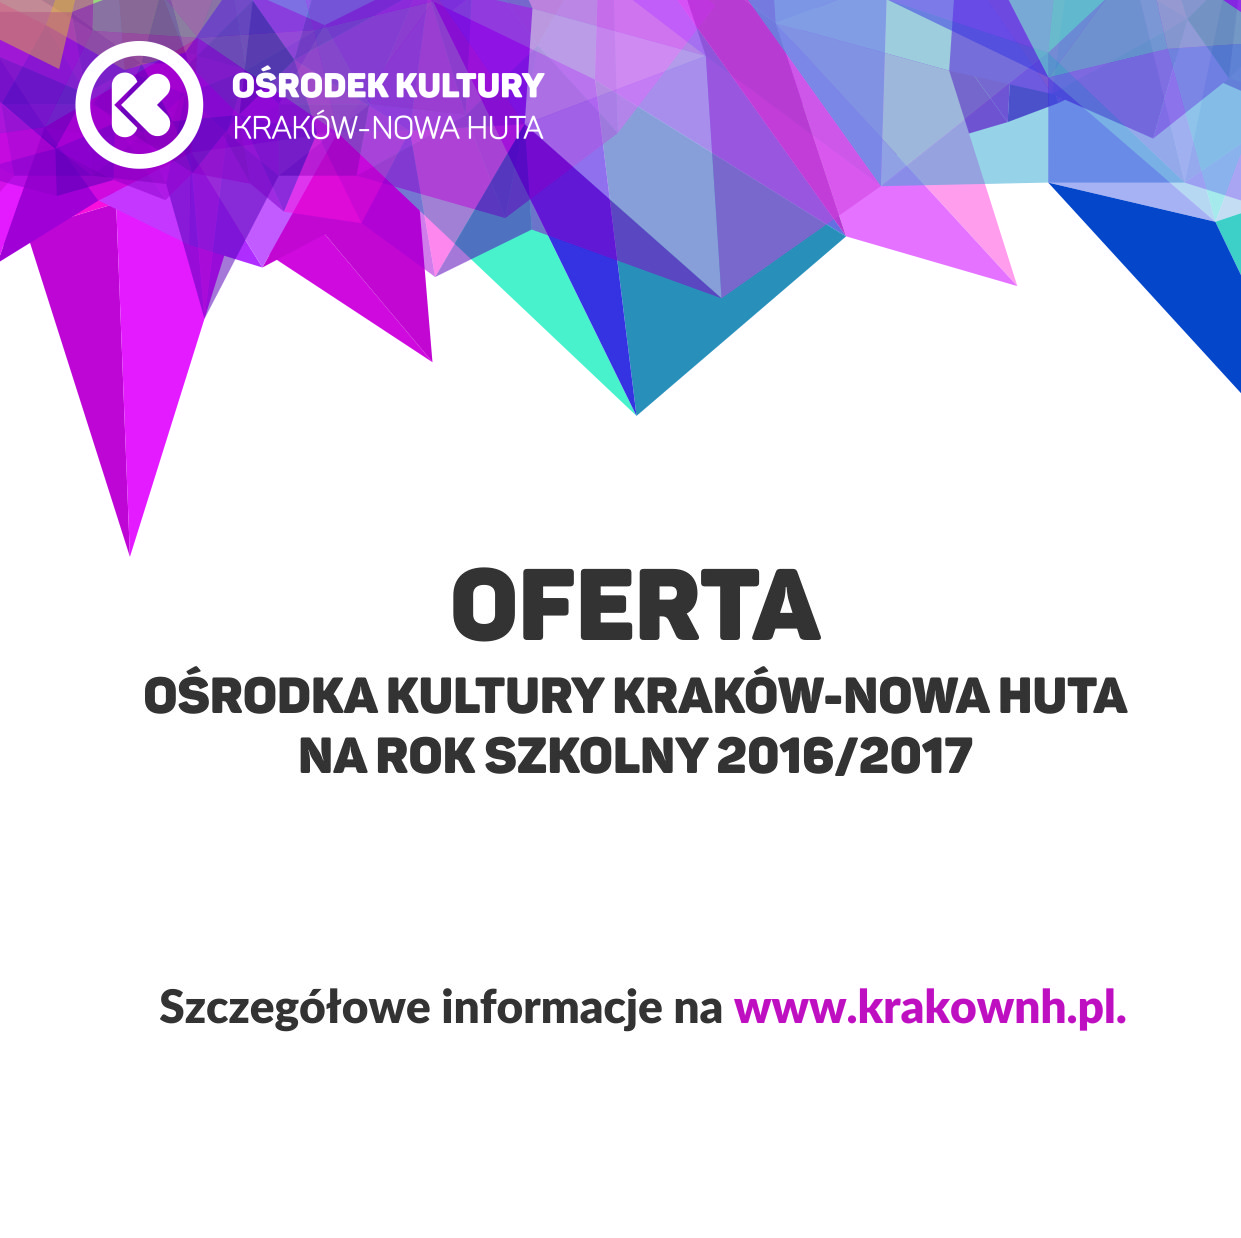 Oferta Ośrodka Kultury Kraków-Nowa Huta